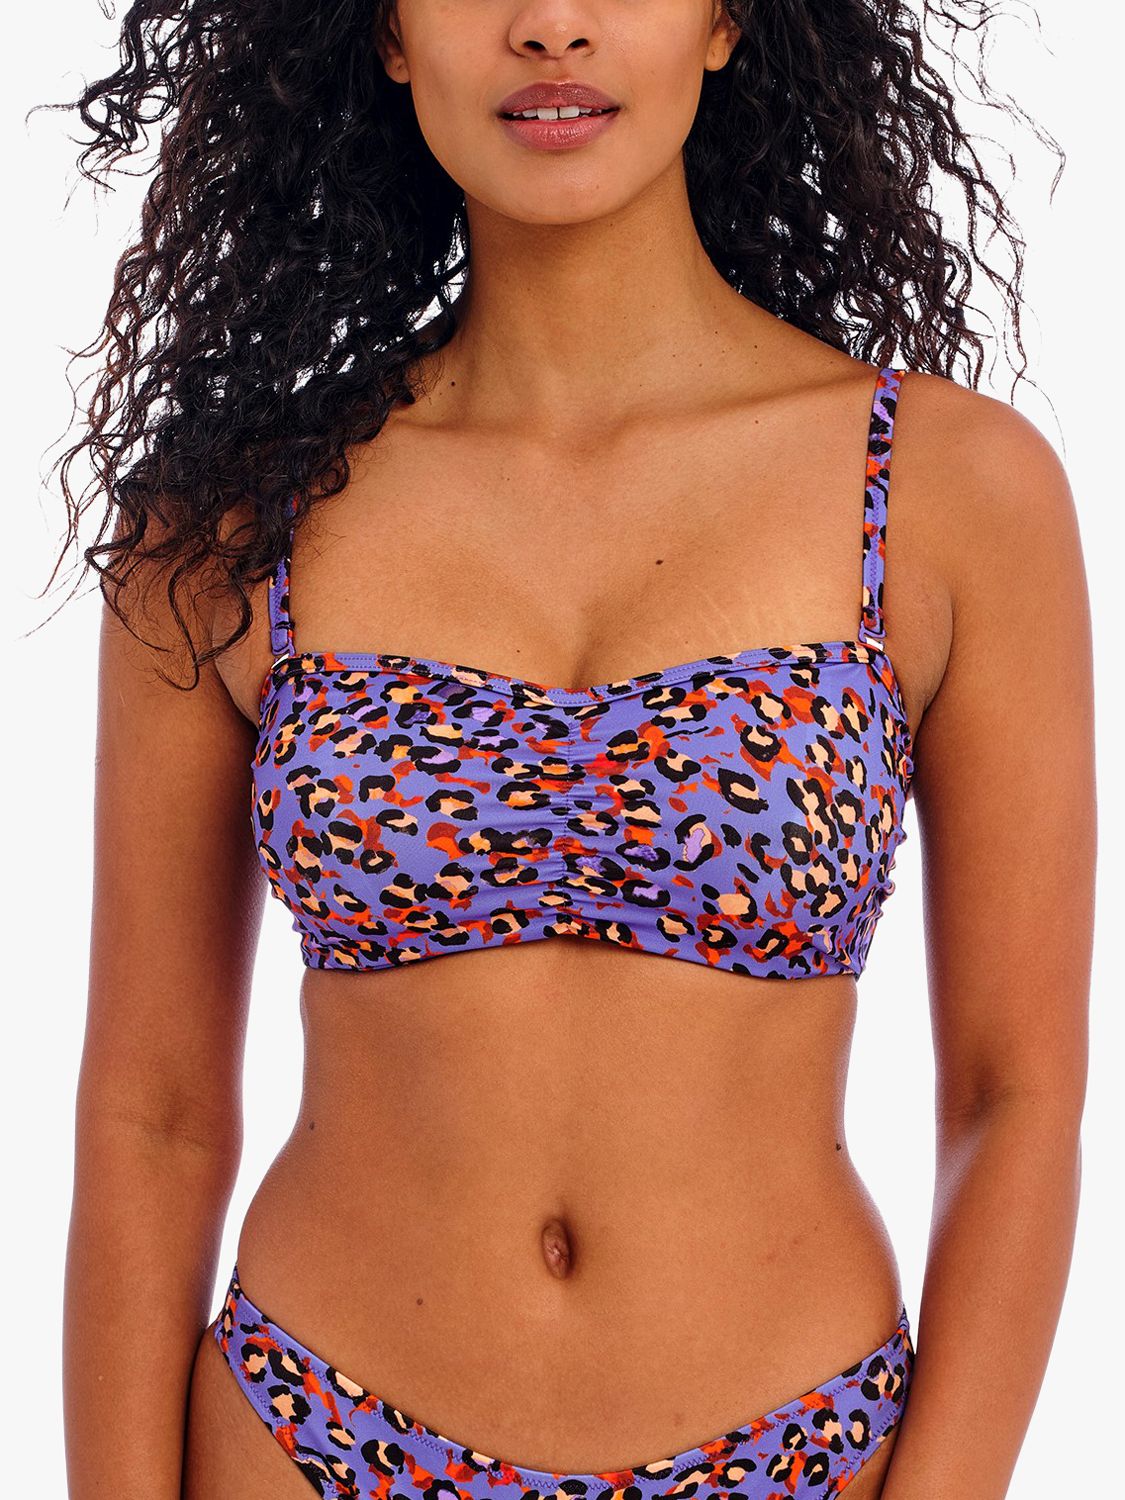 Freya San Tiago Nights Leopard Print Bandeau Bikini Top, Blue/Multi, 36G